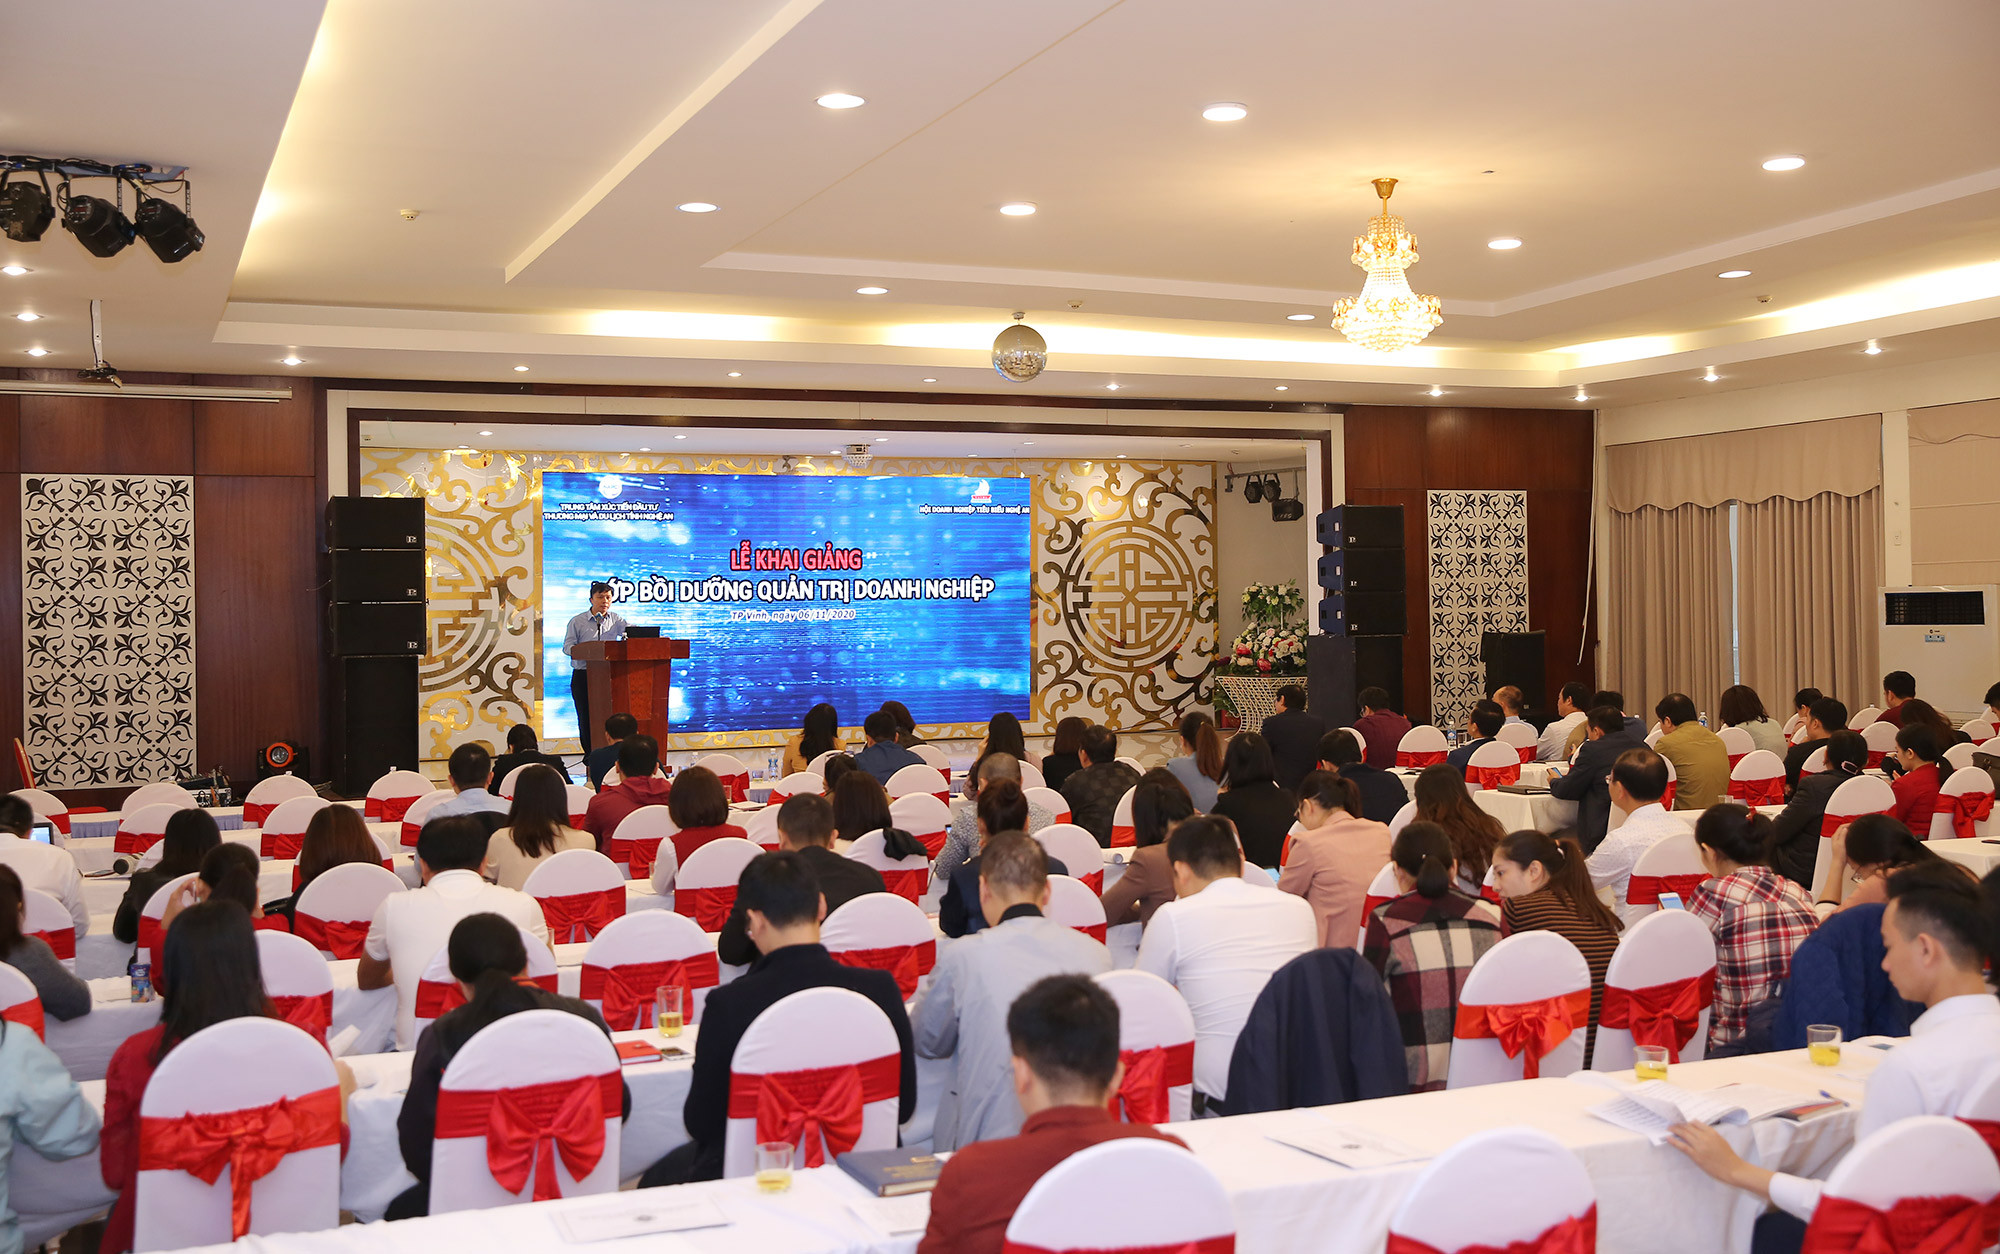 Tham dự khóa bồi dưỡng lần này có hơn 150 học viên là đại diện các doanh nghiệp trên địa bàn tỉnh Nghệ An. Ảnh: Lâm Tùng